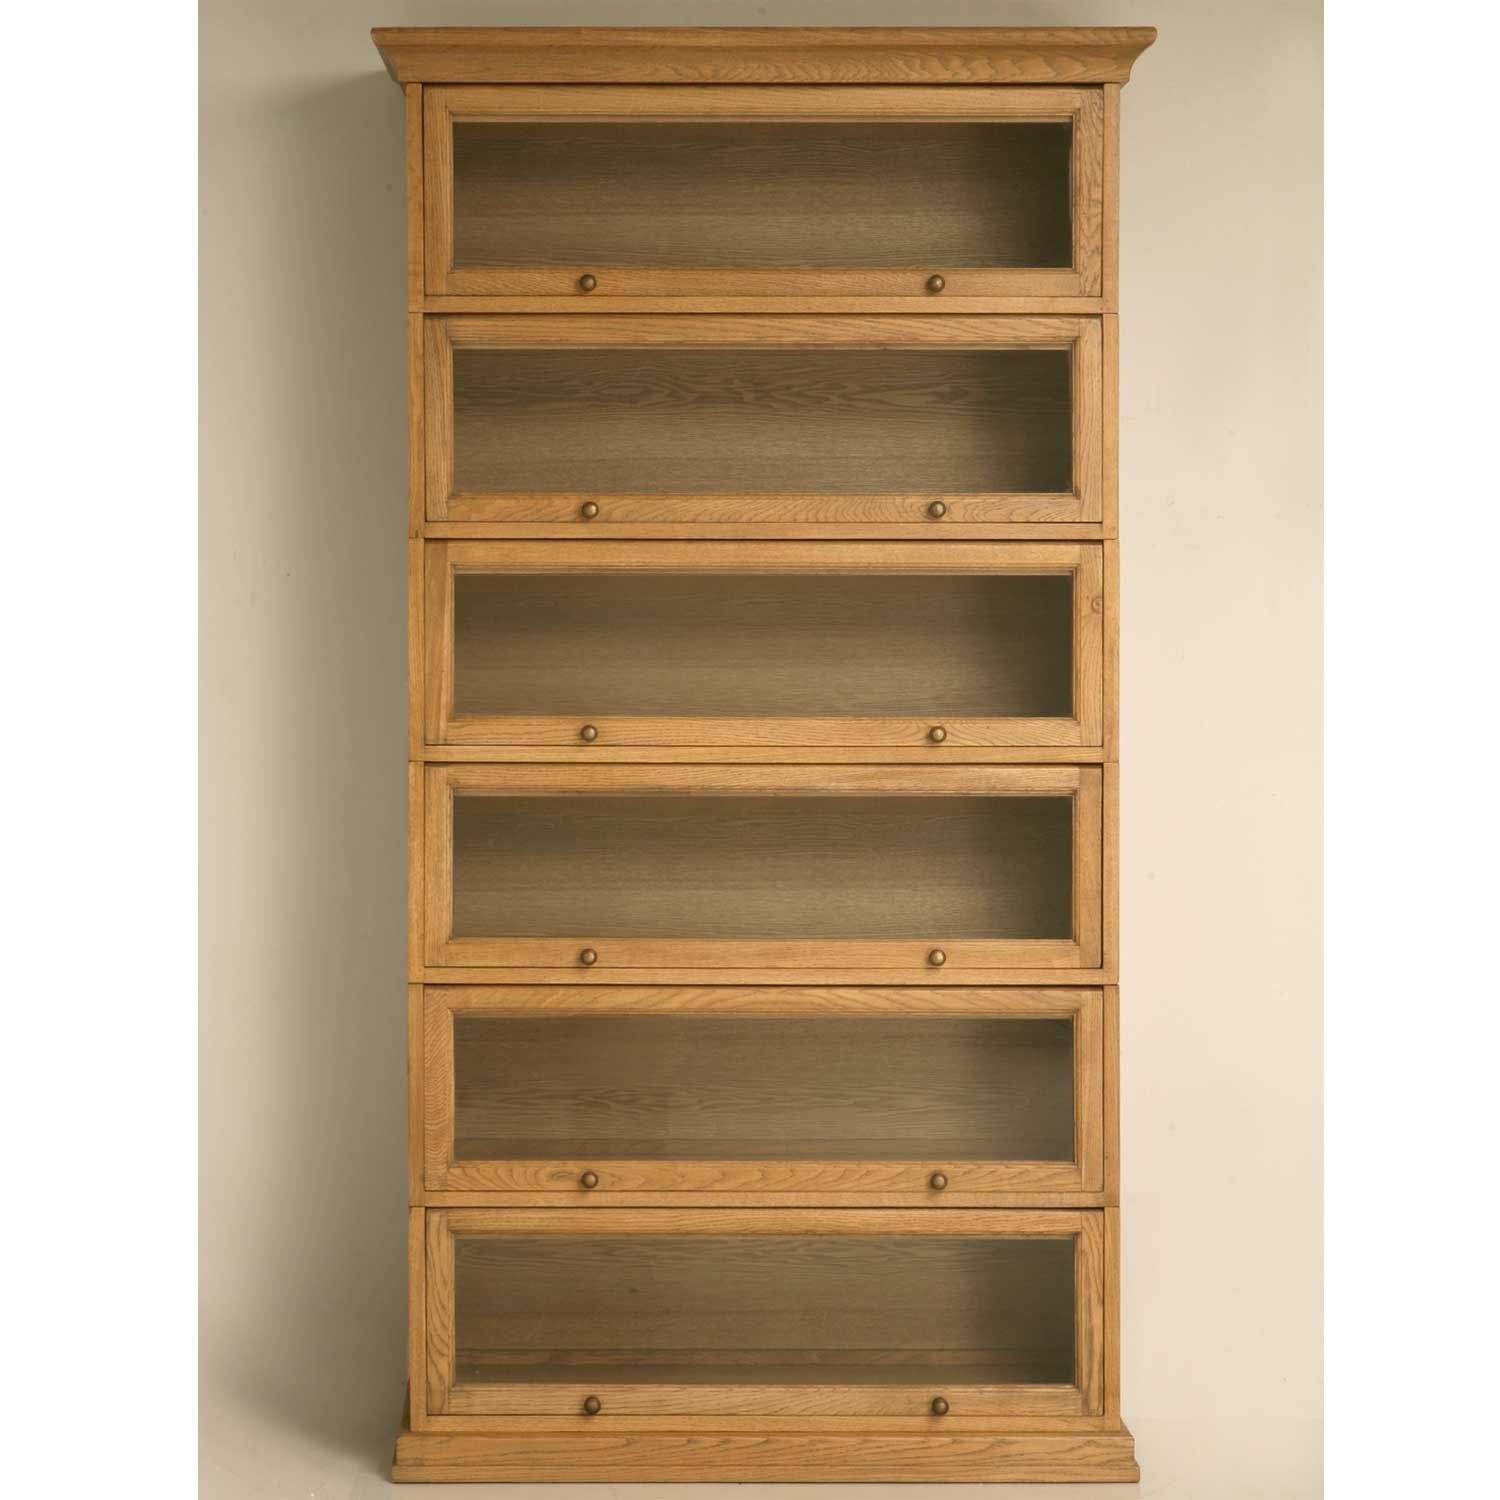 Wooden Bookshelves Bookshelves Made From Hardwoods Are Typically Regarding Wooden Bookshelves (Photo 7 of 14)